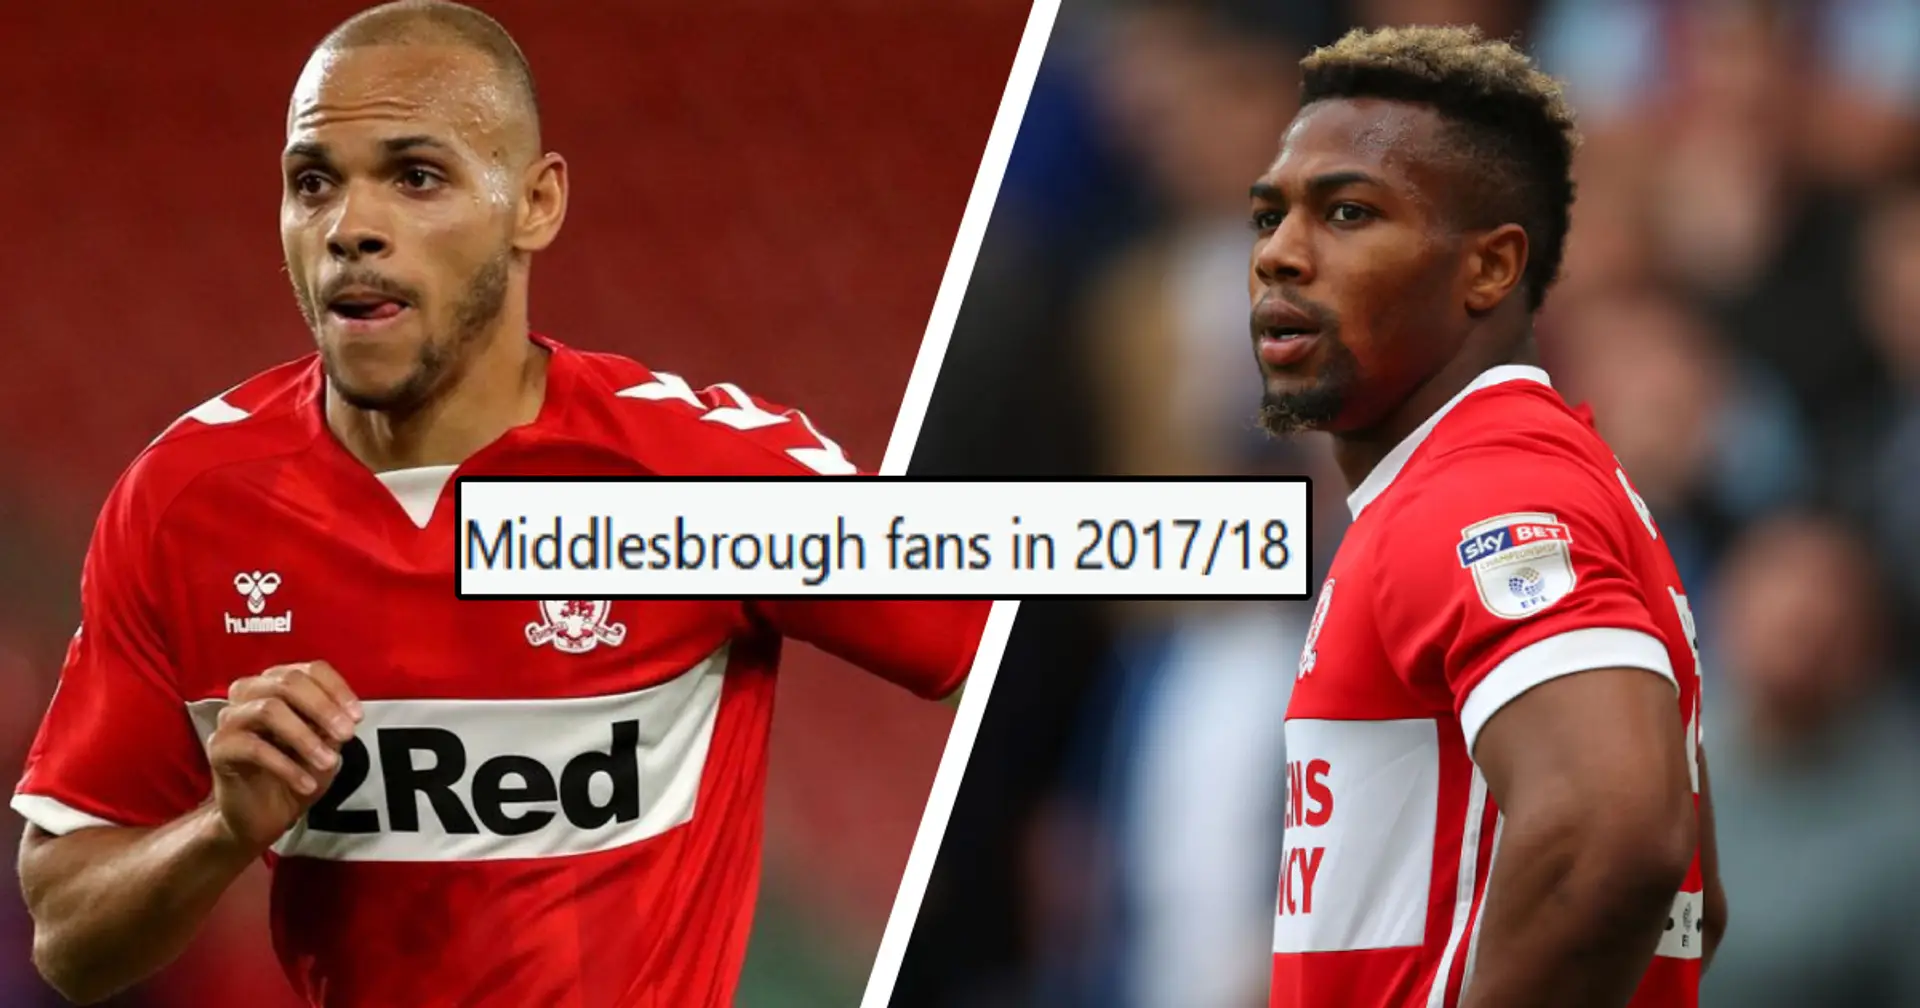 "Ils ne le croiront pas": un fan de Middlesbrough rappelle à tous qu'Adama et Braithwaite ont joué ensemble à Boro en 2017